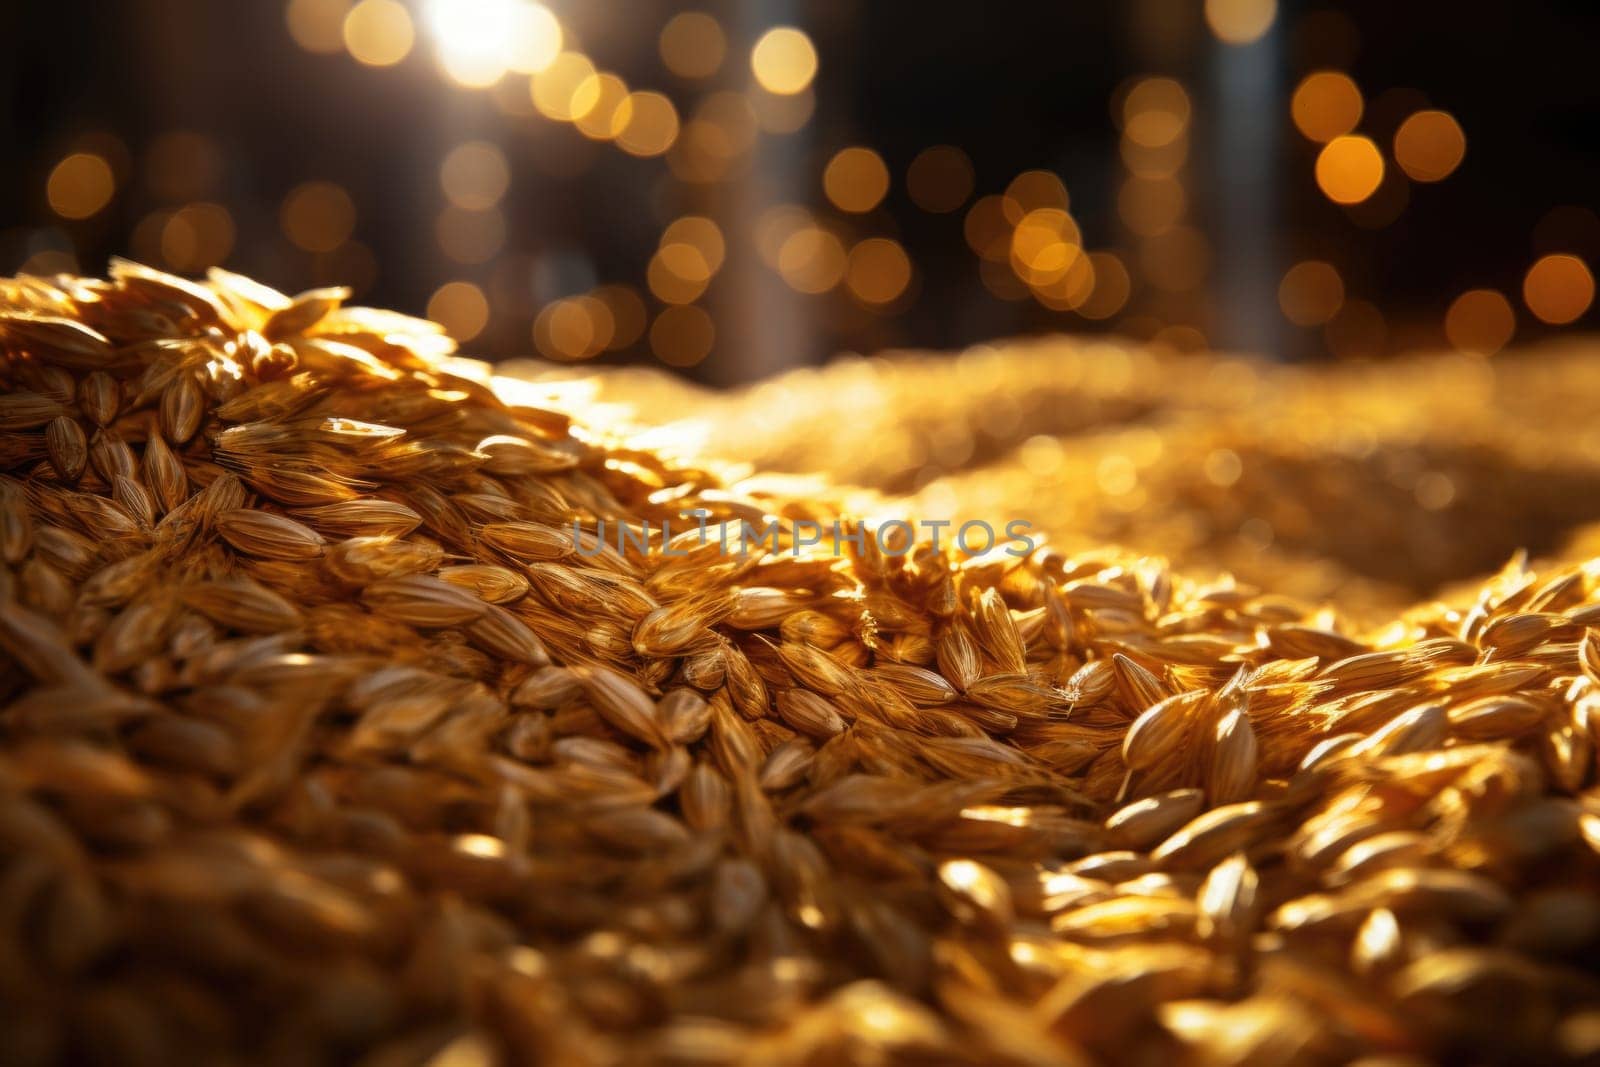 Grain warehouse. Heaps of grain on a wooden floor. Harvest concept. Golden grain.